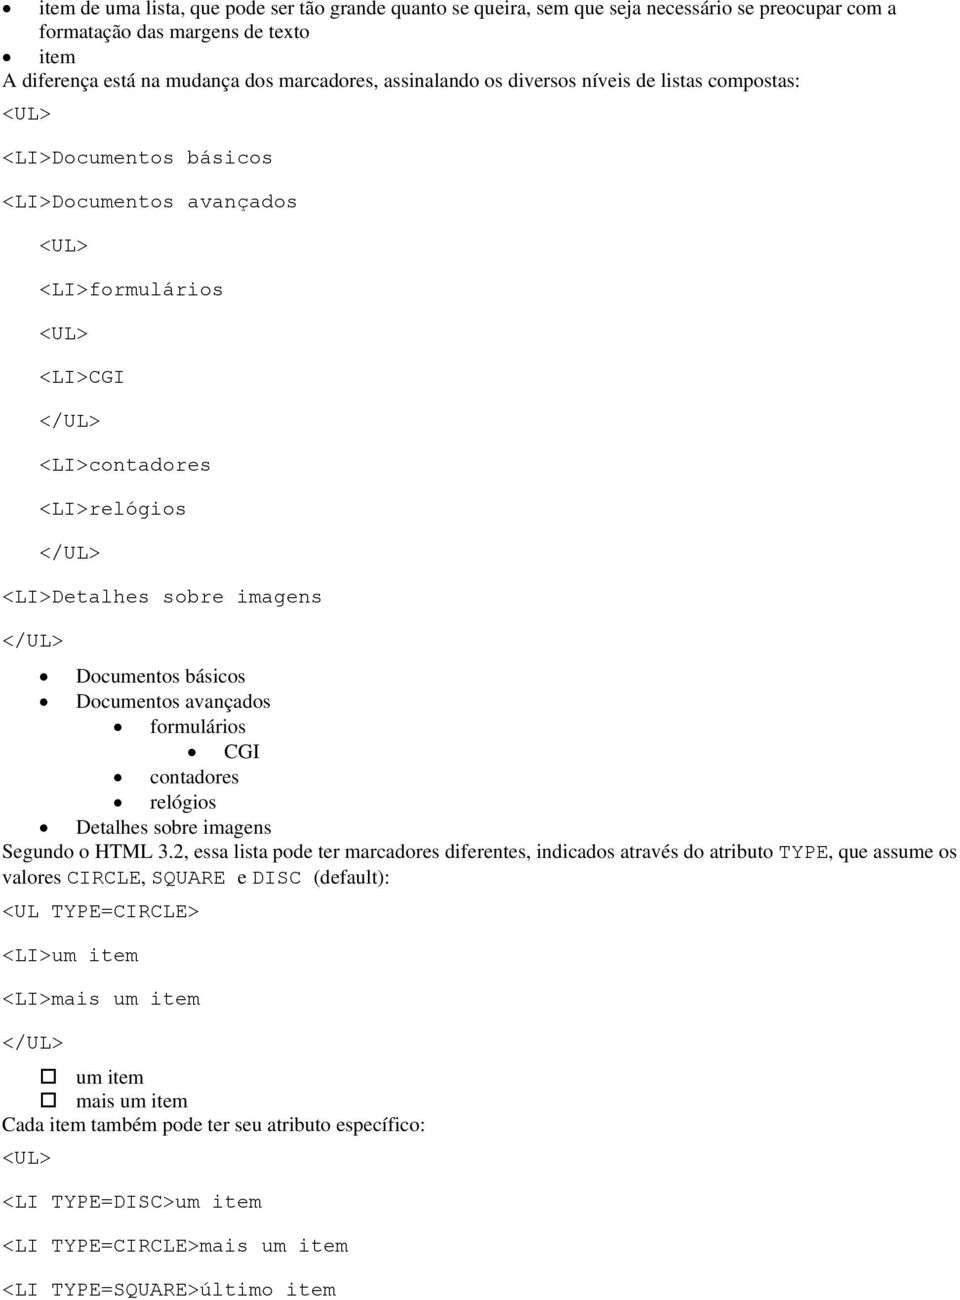 Documentos básicos Documentos avançados formulários CGI contadores relógios Detalhes sobre imagens Segundo o HTML 3.